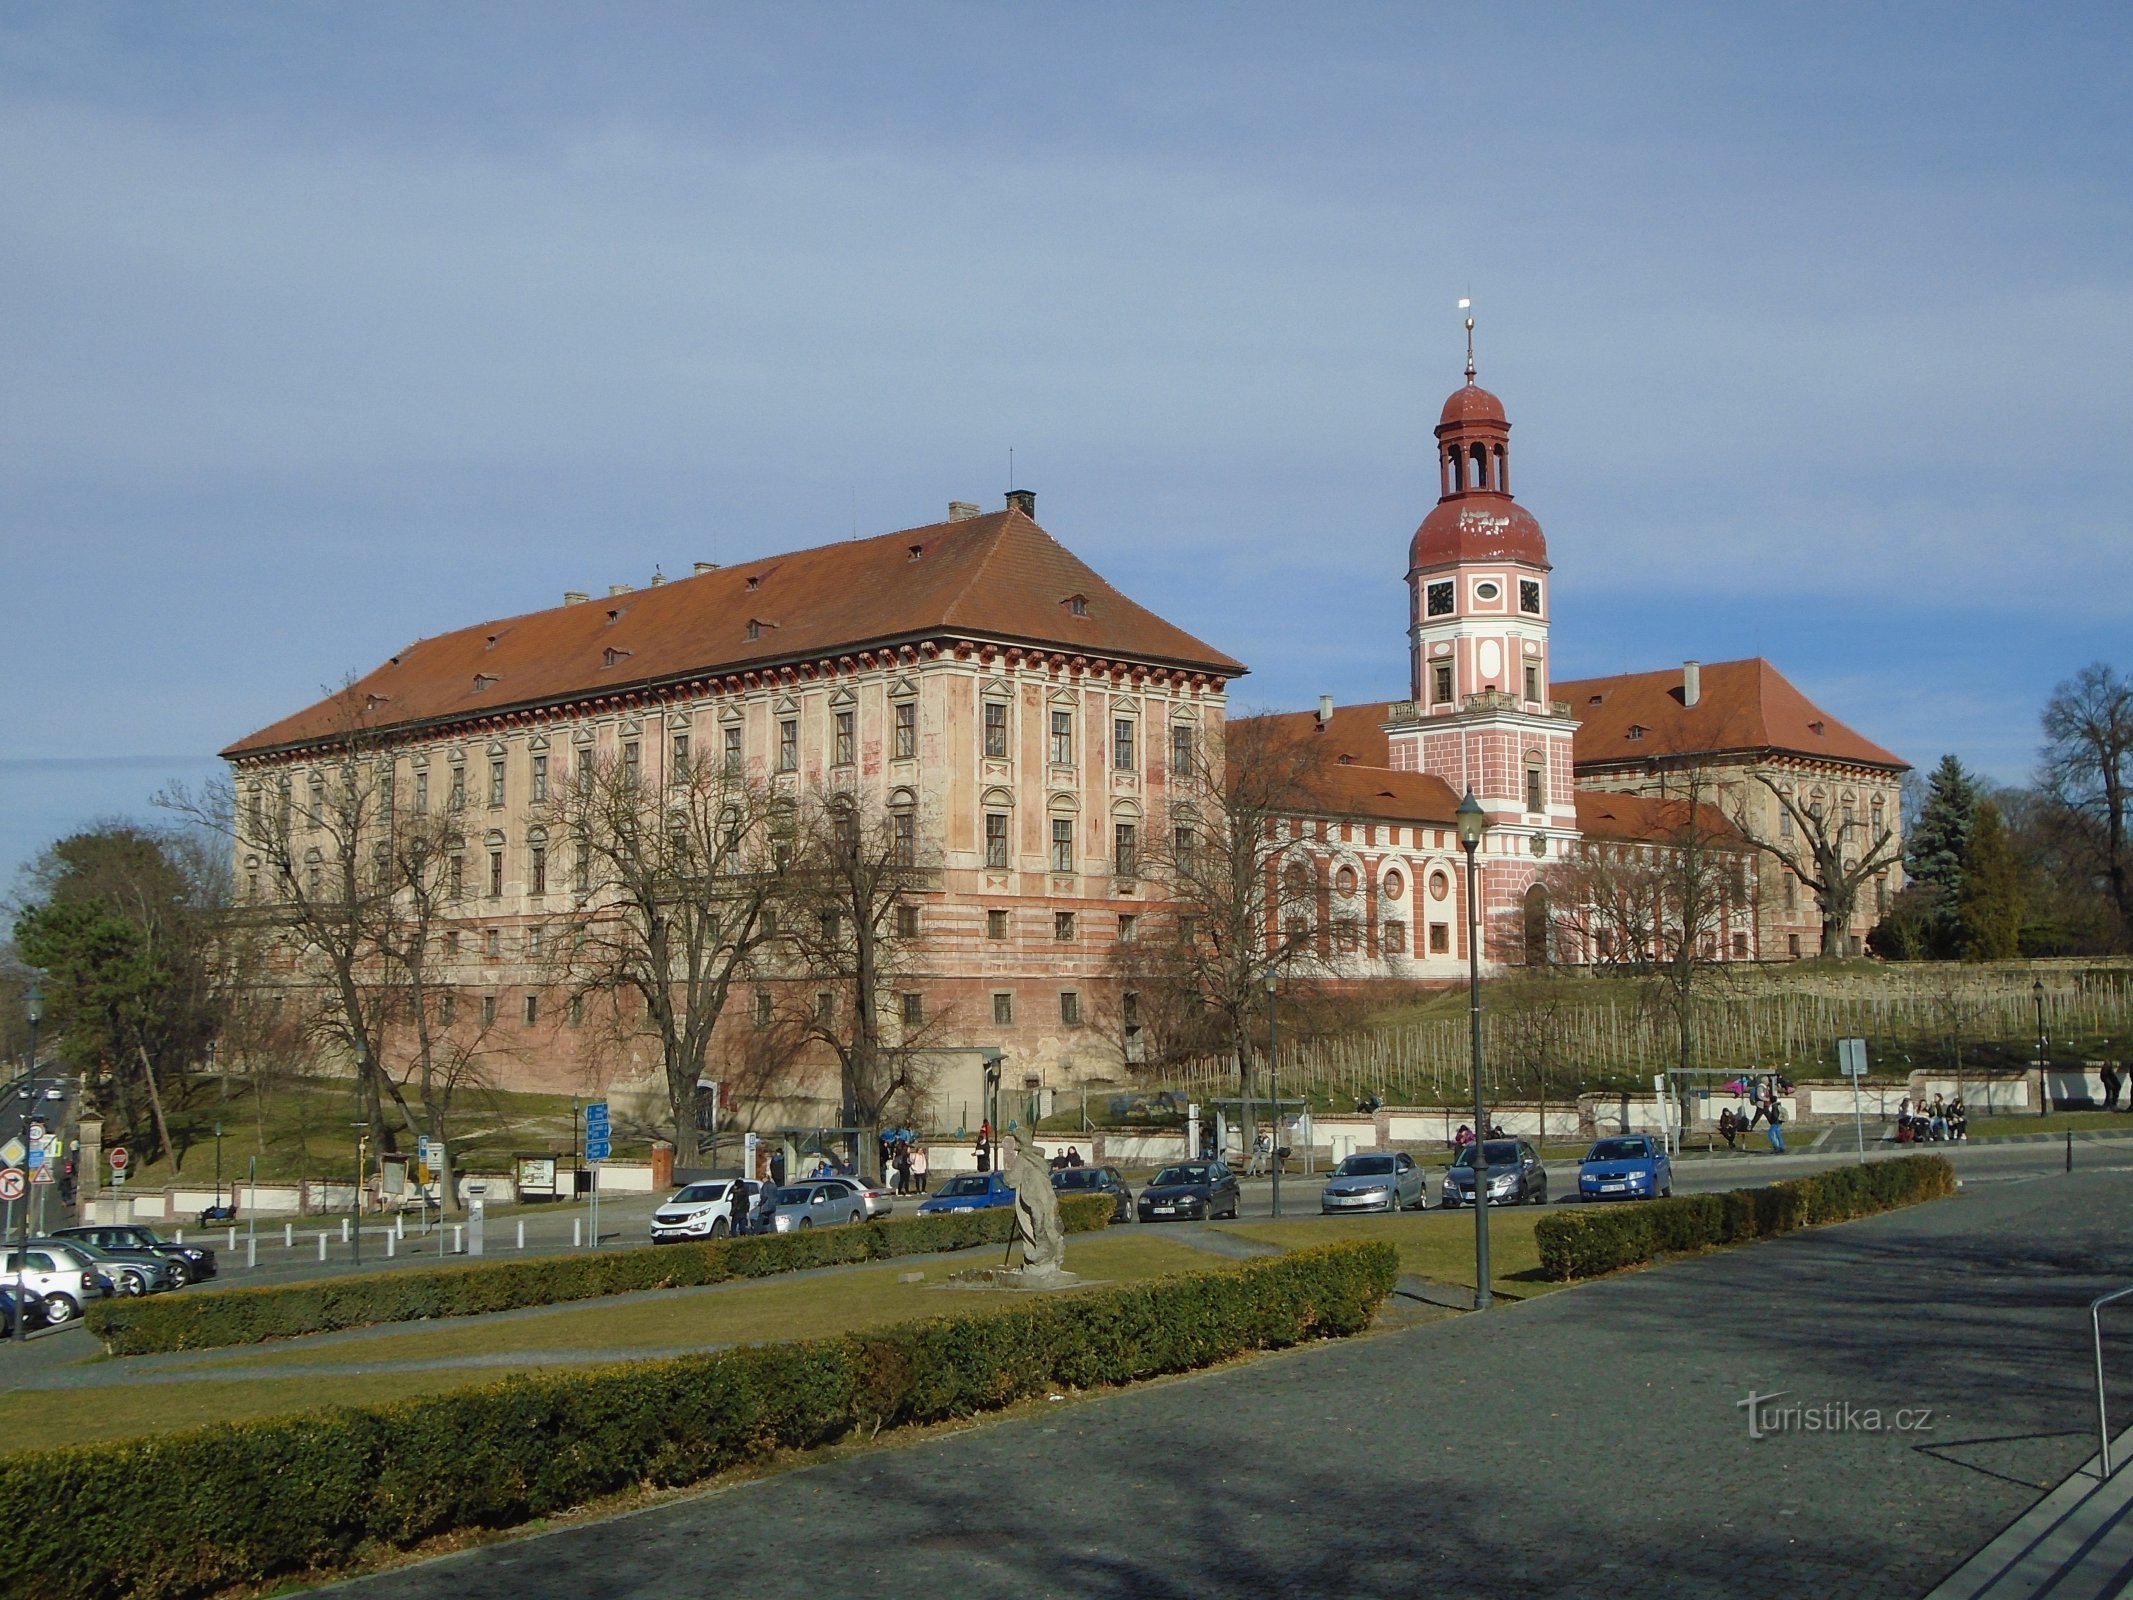 Castelul Lobkowicz (Roudnice nad Labem, 6.3.2019 martie XNUMX)